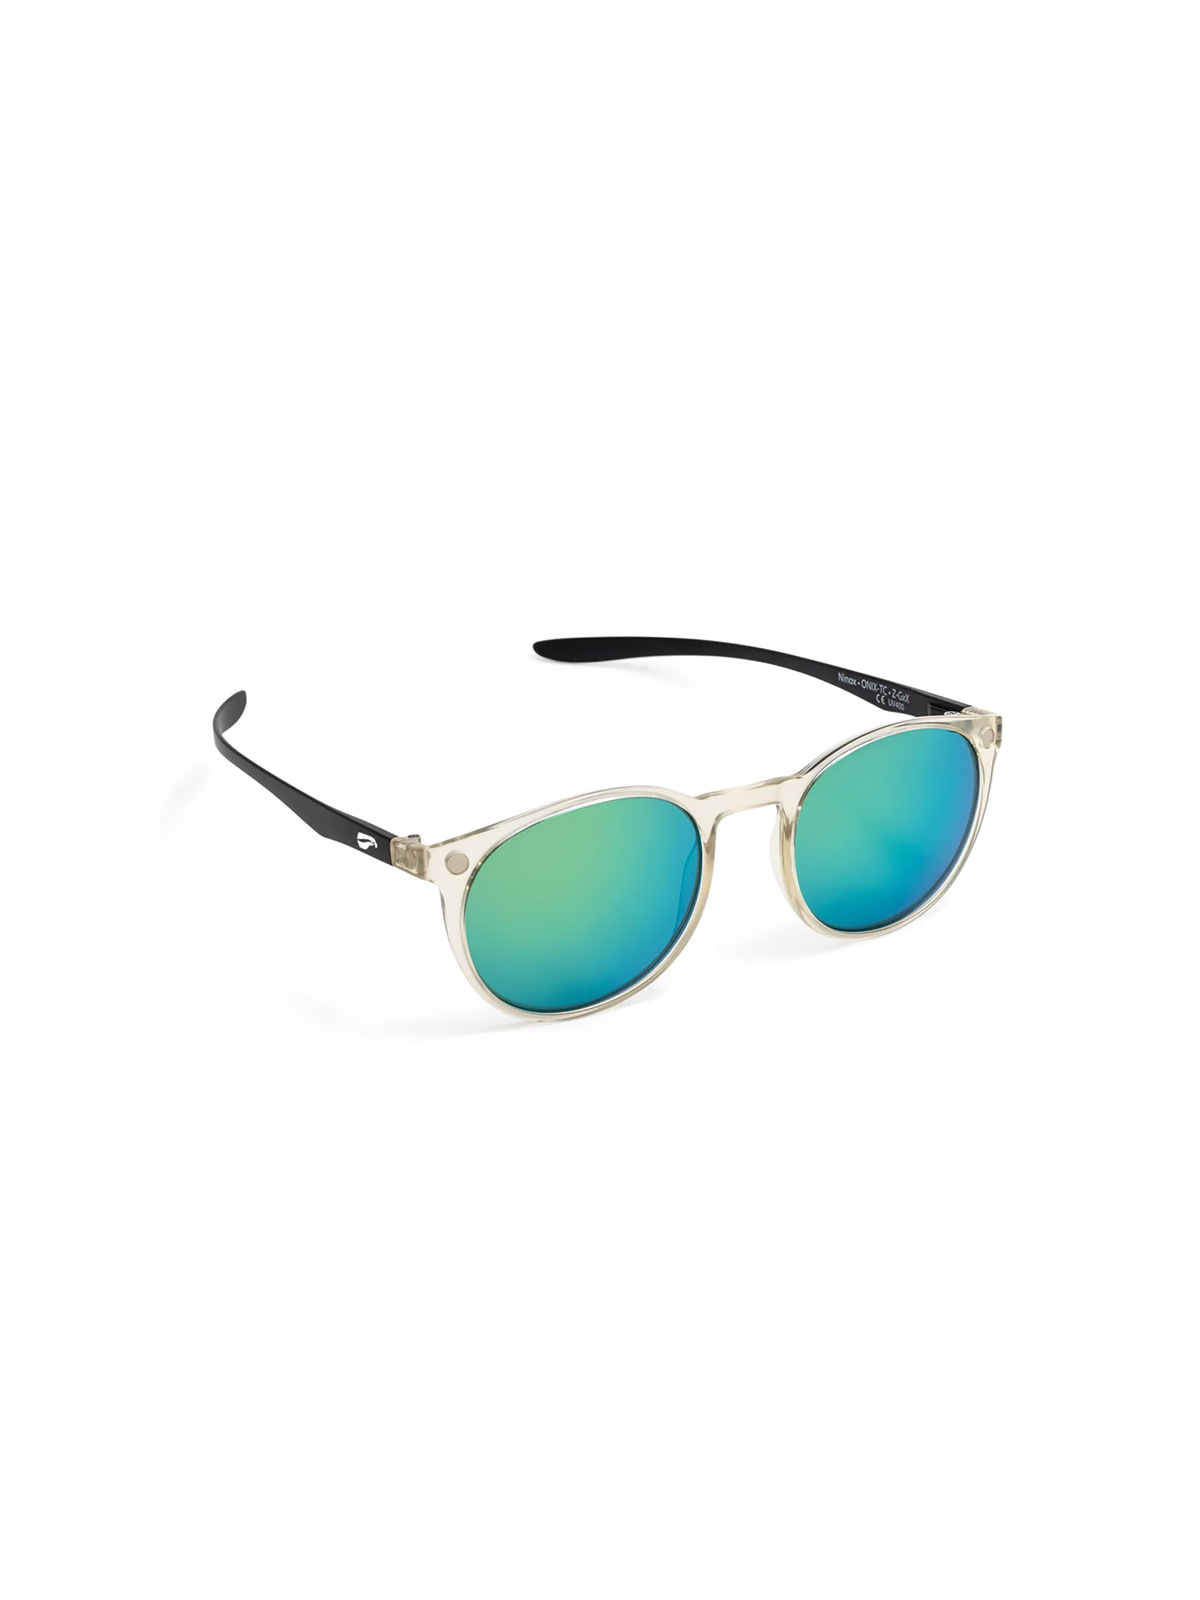 Flying Eyes Sonnenbrille Ninox - Rahmen durchsichtig, Bügel matt schwarz, Linsen Smaragdfarben (verspiegelt)